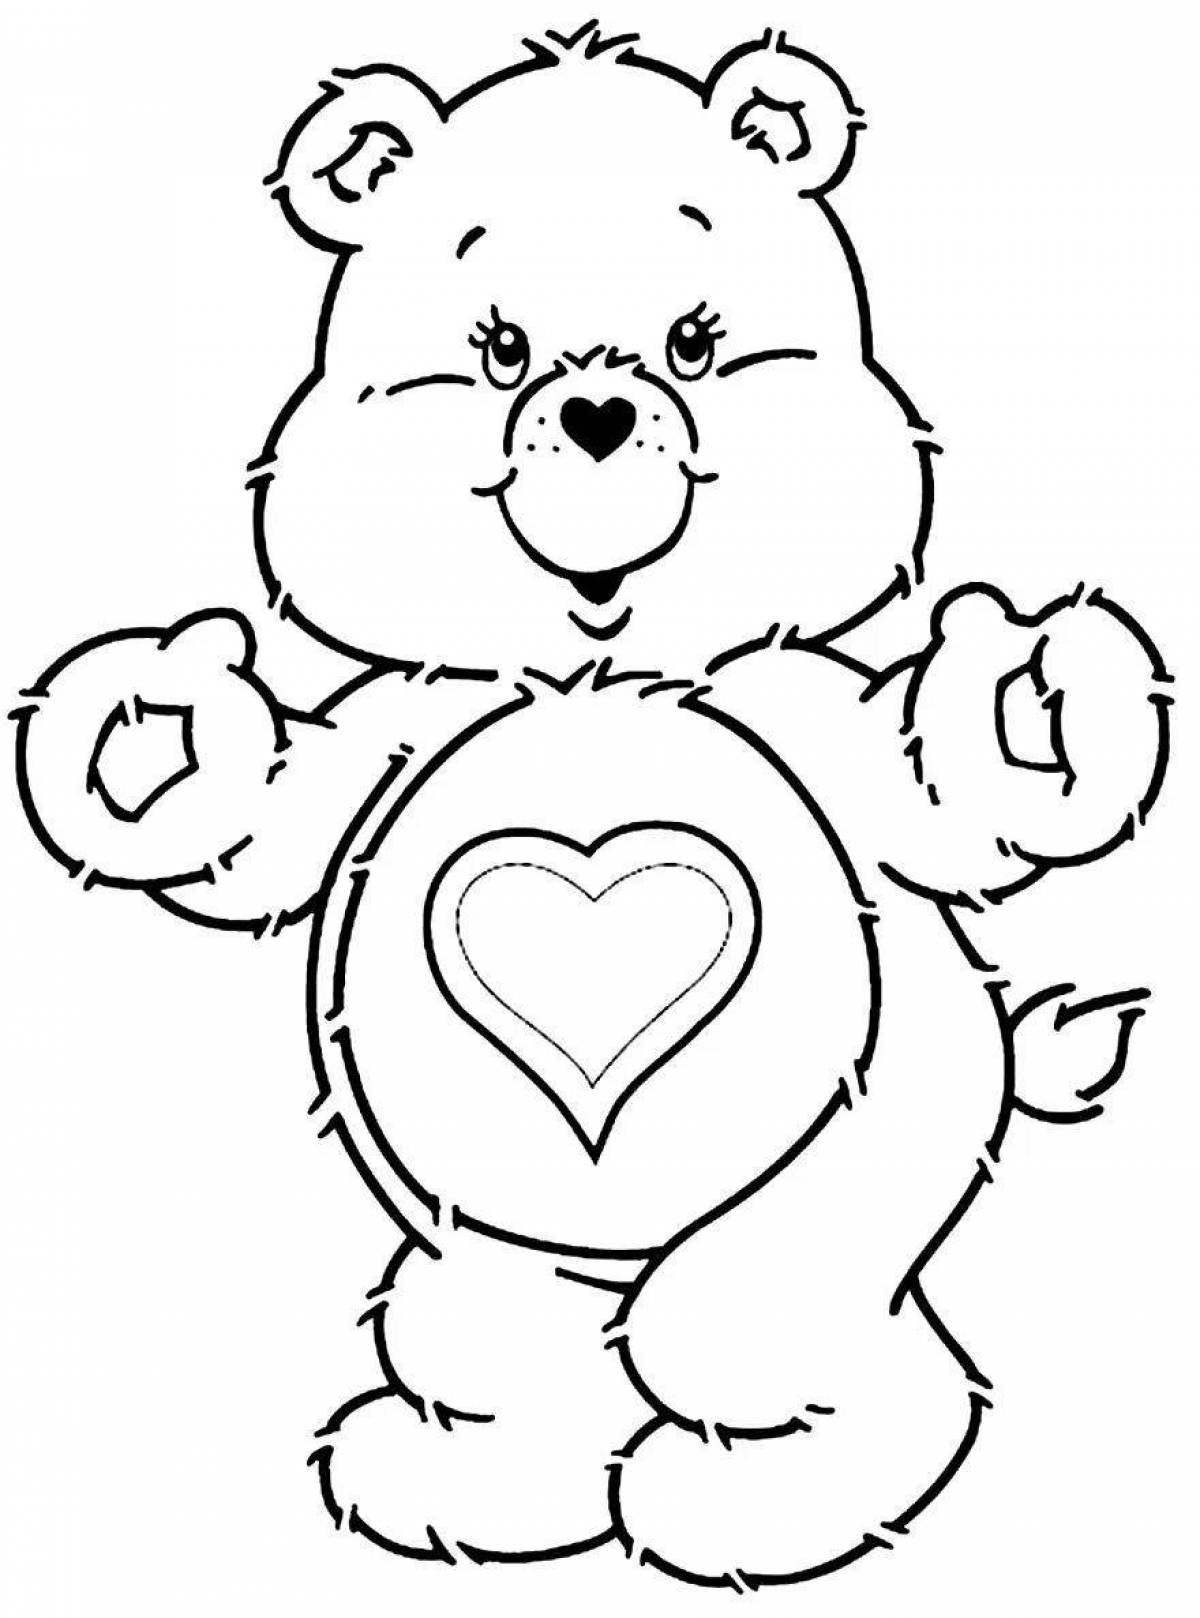 Bear with a heart #1